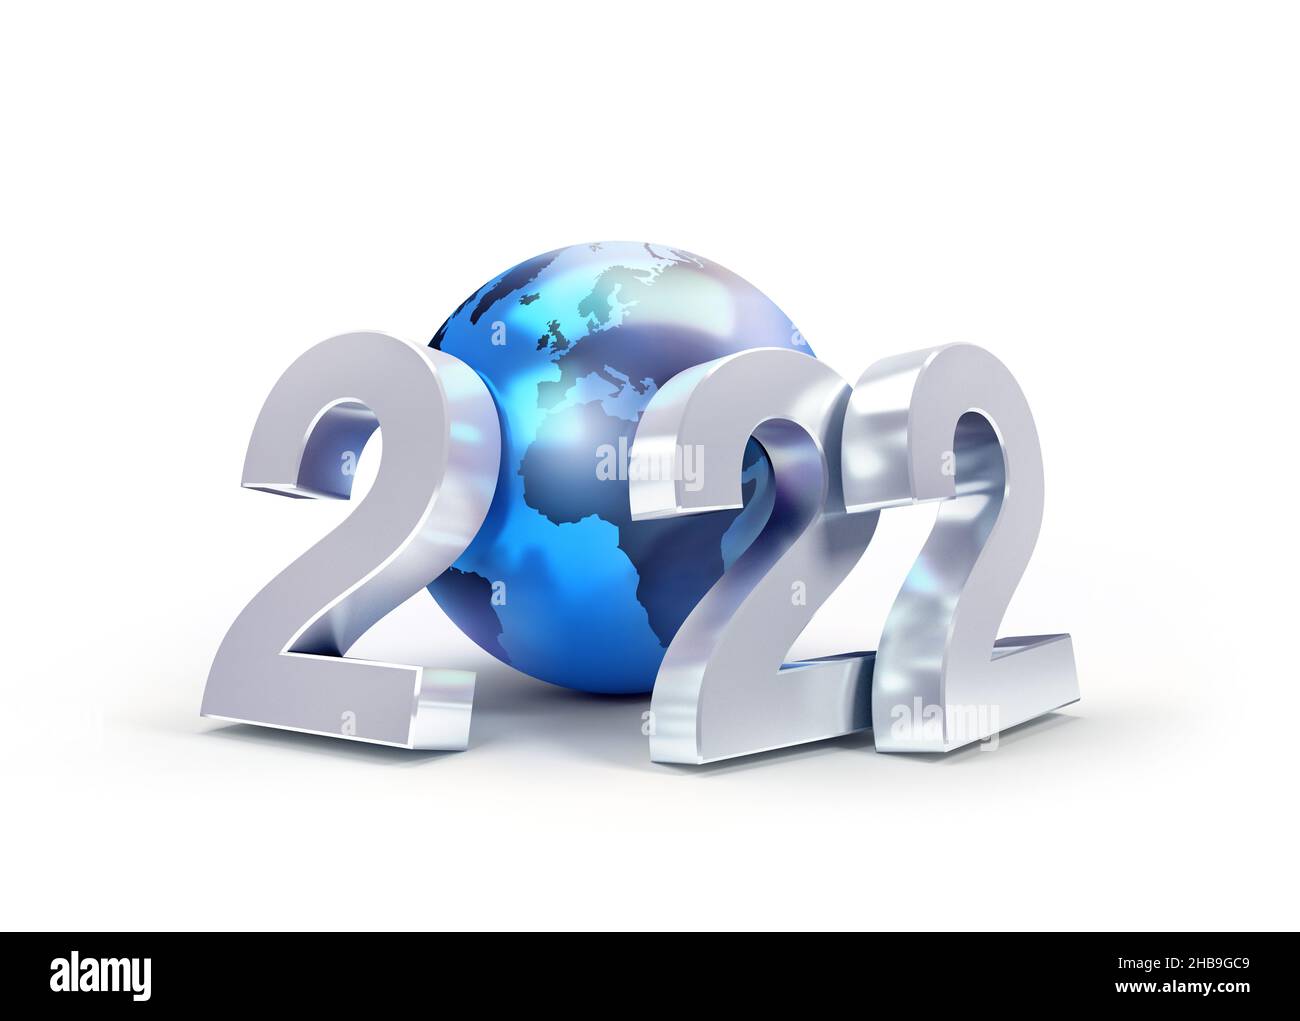 2022 Número de fecha de plata de Año Nuevo compuesto por un globo terráqueo azul, aislado sobre blanco - ilustración 3D Foto de stock